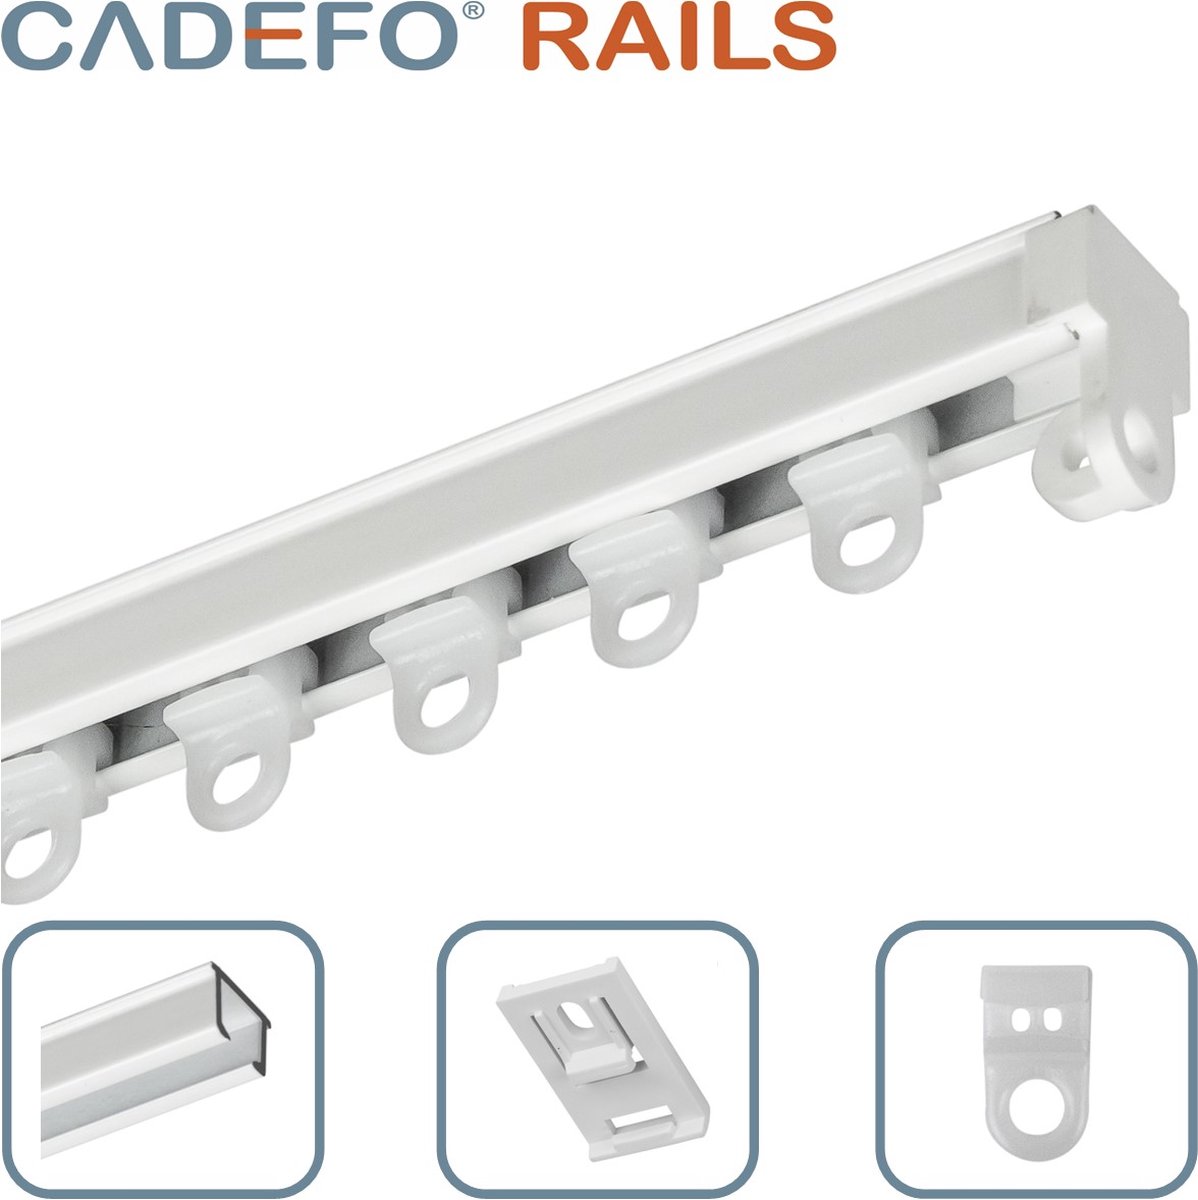 CADEFO RAILS (351 - 400 cm) Gordijnrails - Compleet op maat! - UIT 1 STUK - Leverbaar tot 6 meter - Plafondbevestiging - Lengte 390 cm